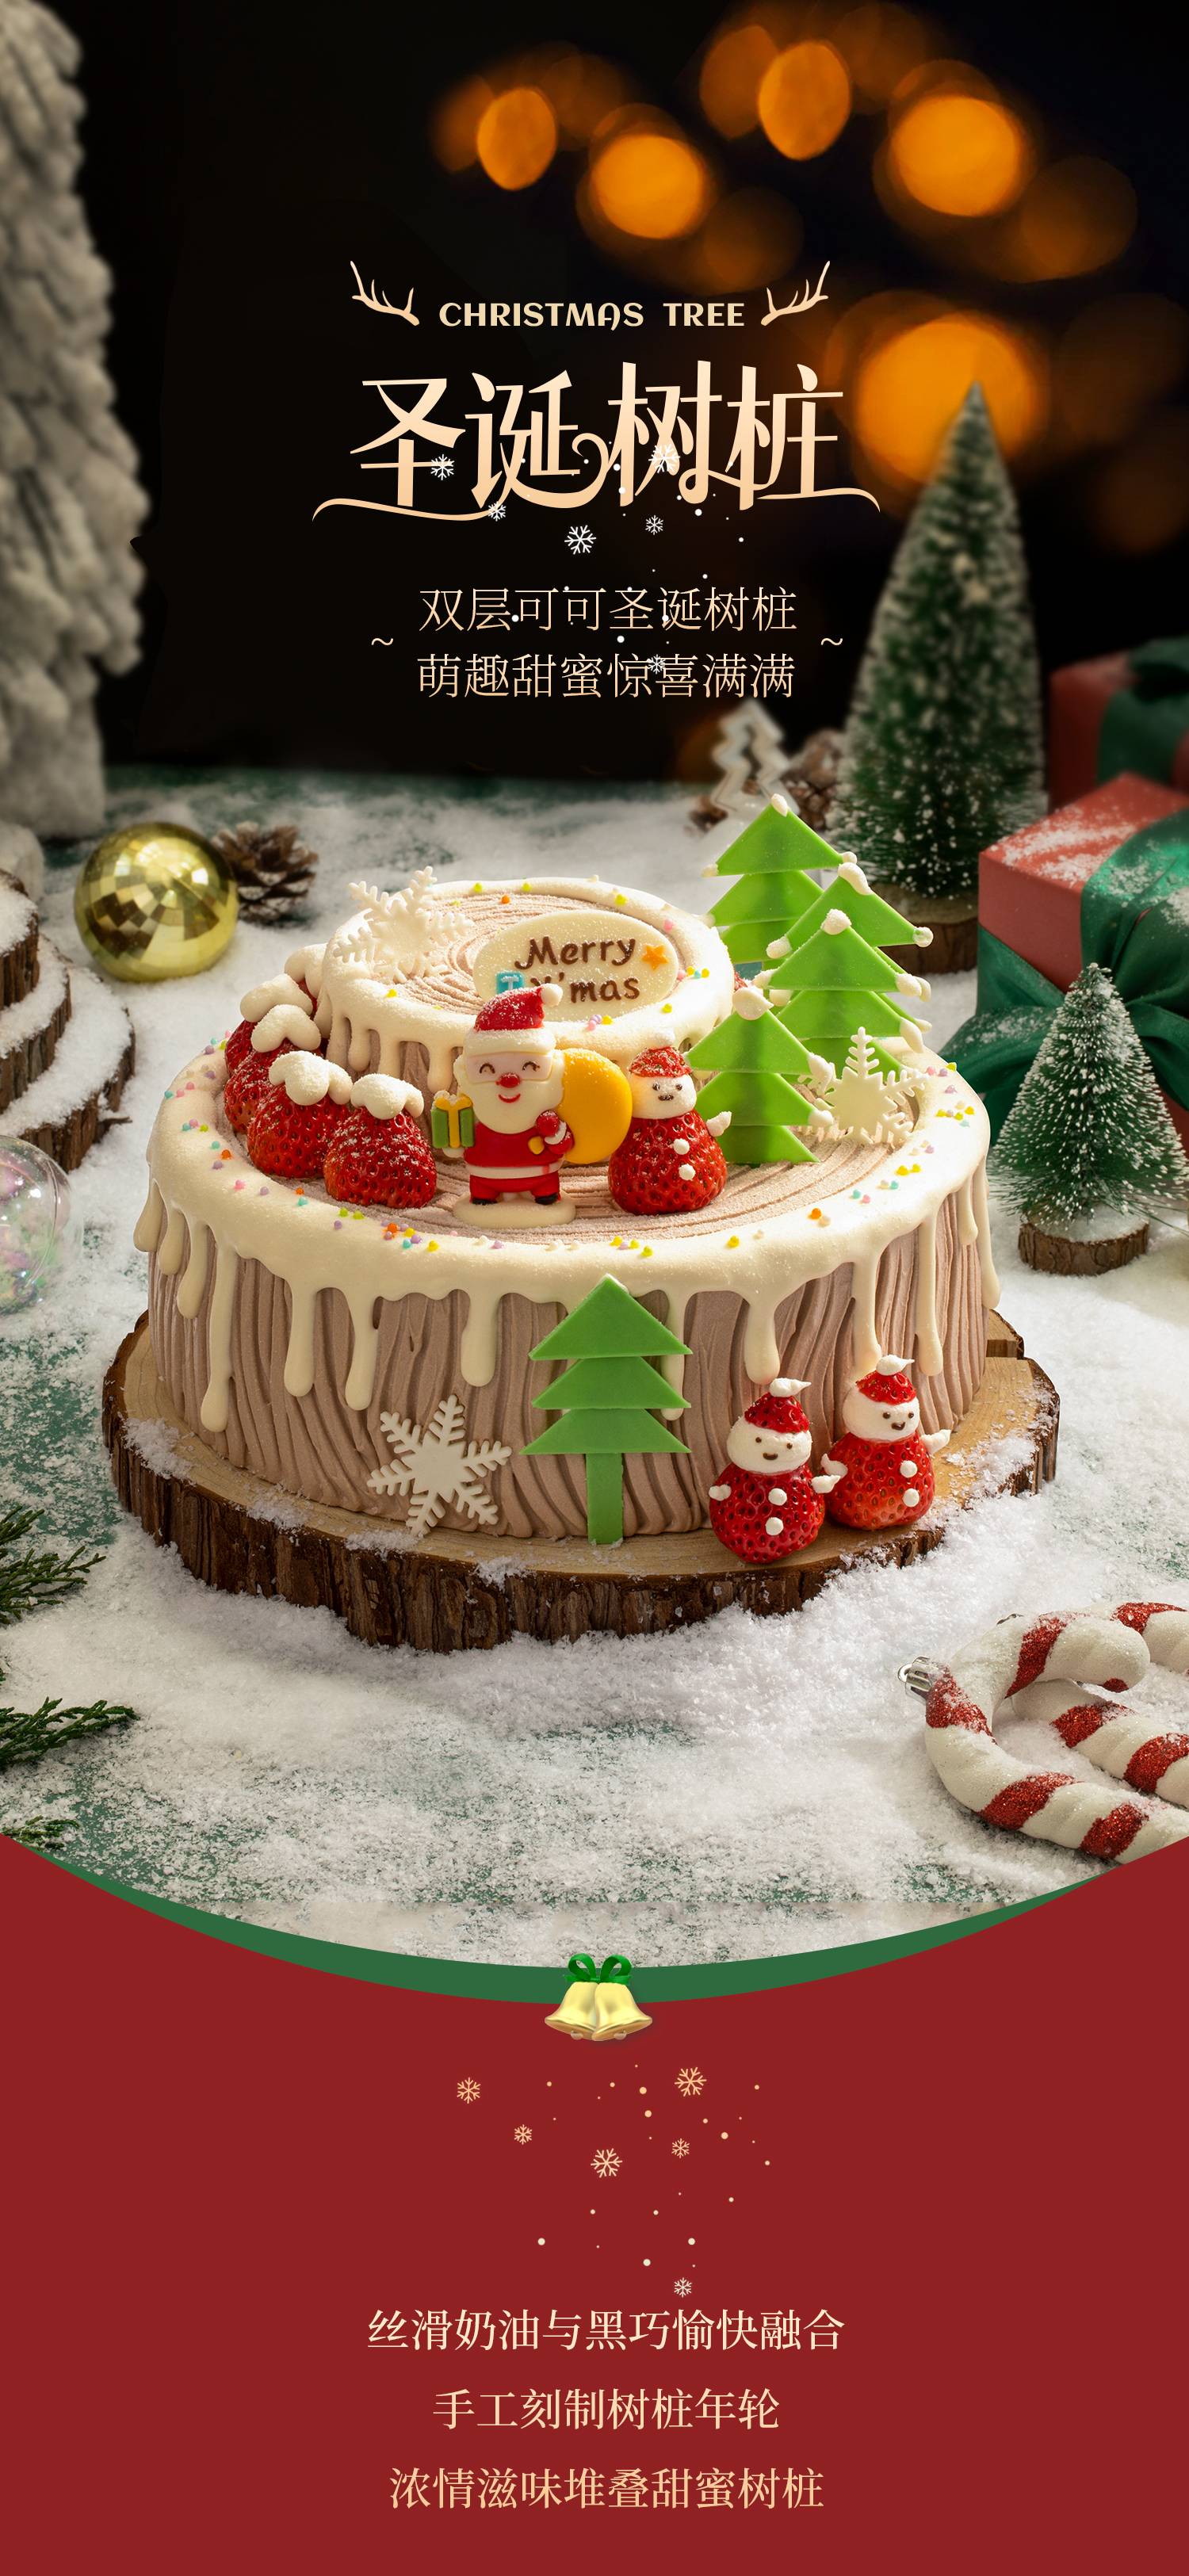 圣诞树桩_幸福西饼蛋糕预定_加盟幸福西饼_深圳幸福西饼官方网站